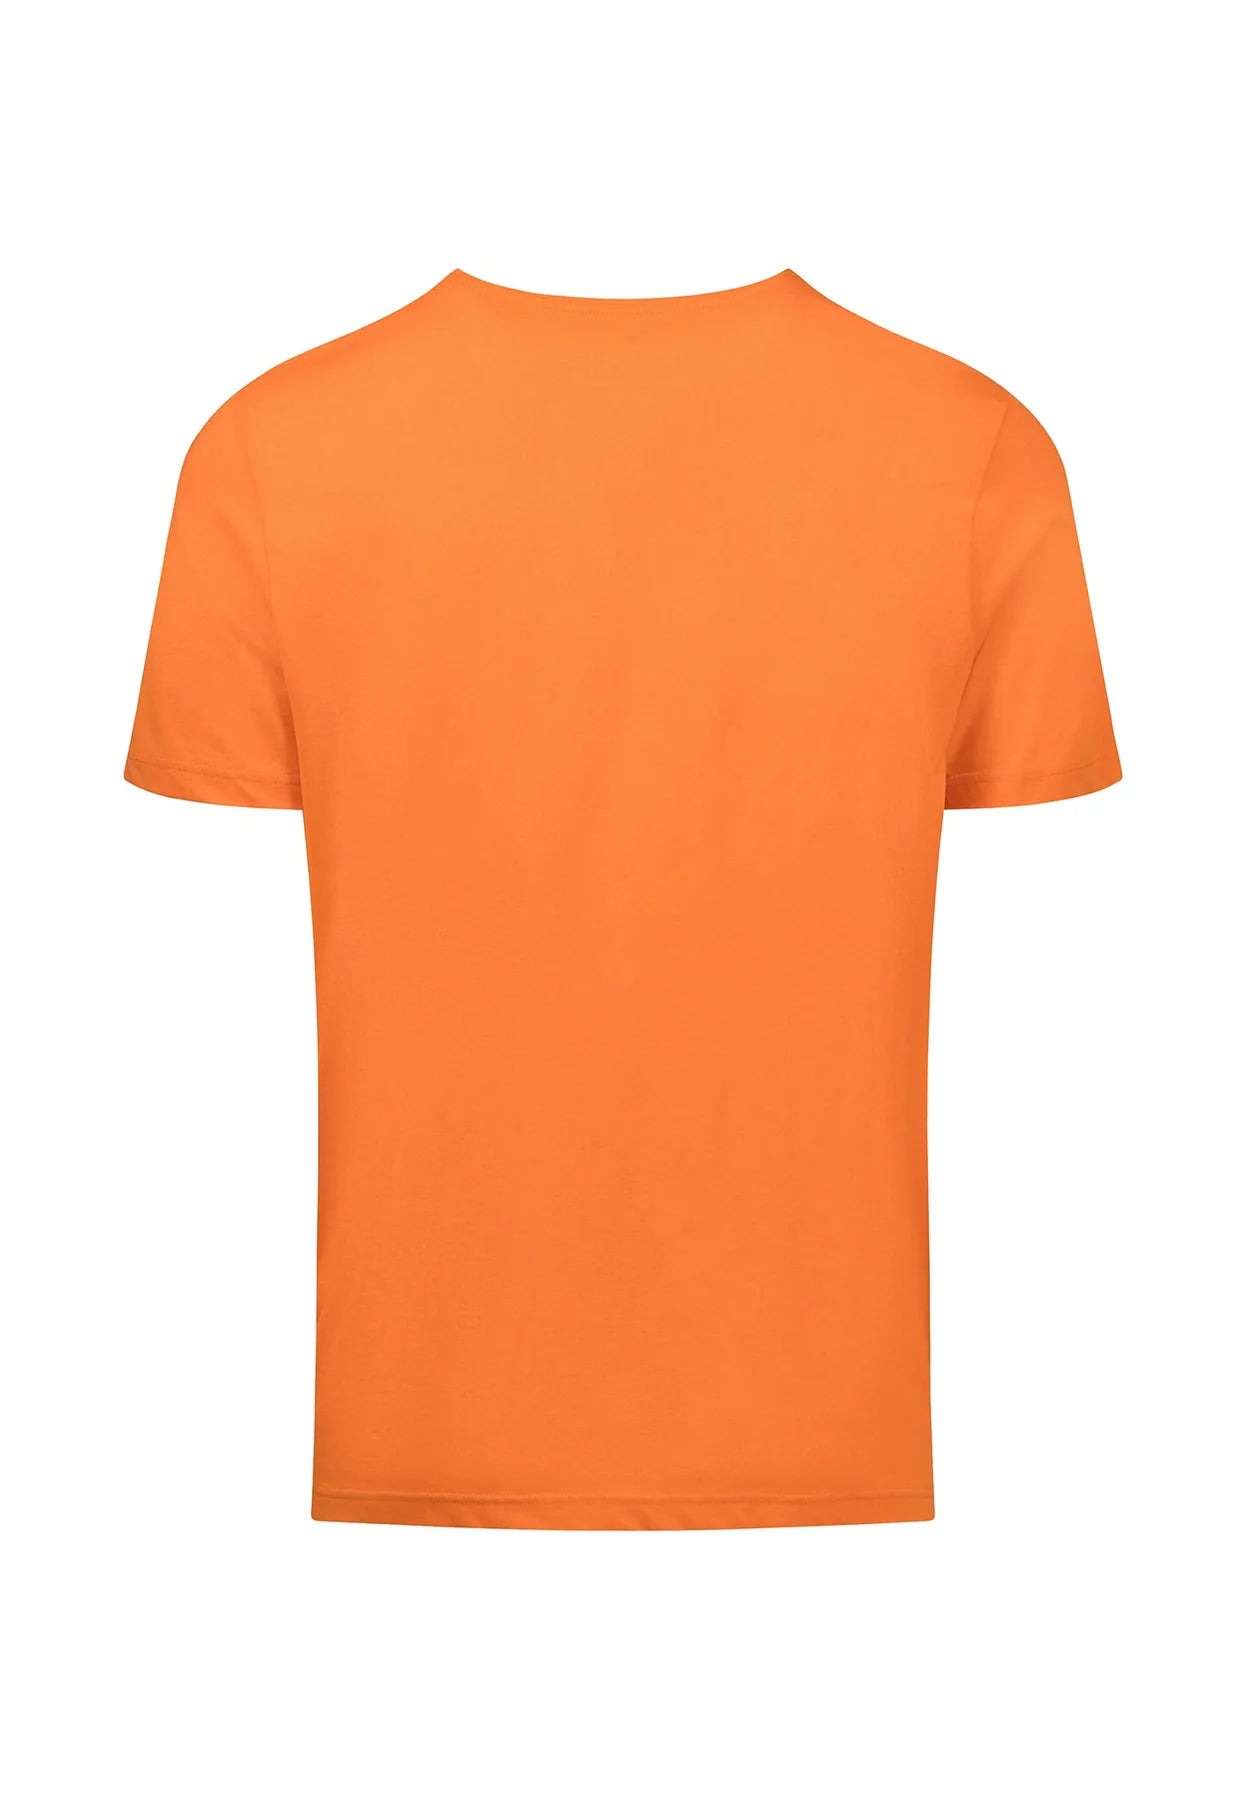 Fynch Hatton Cotton Jersey T-Shirt- Tangerine